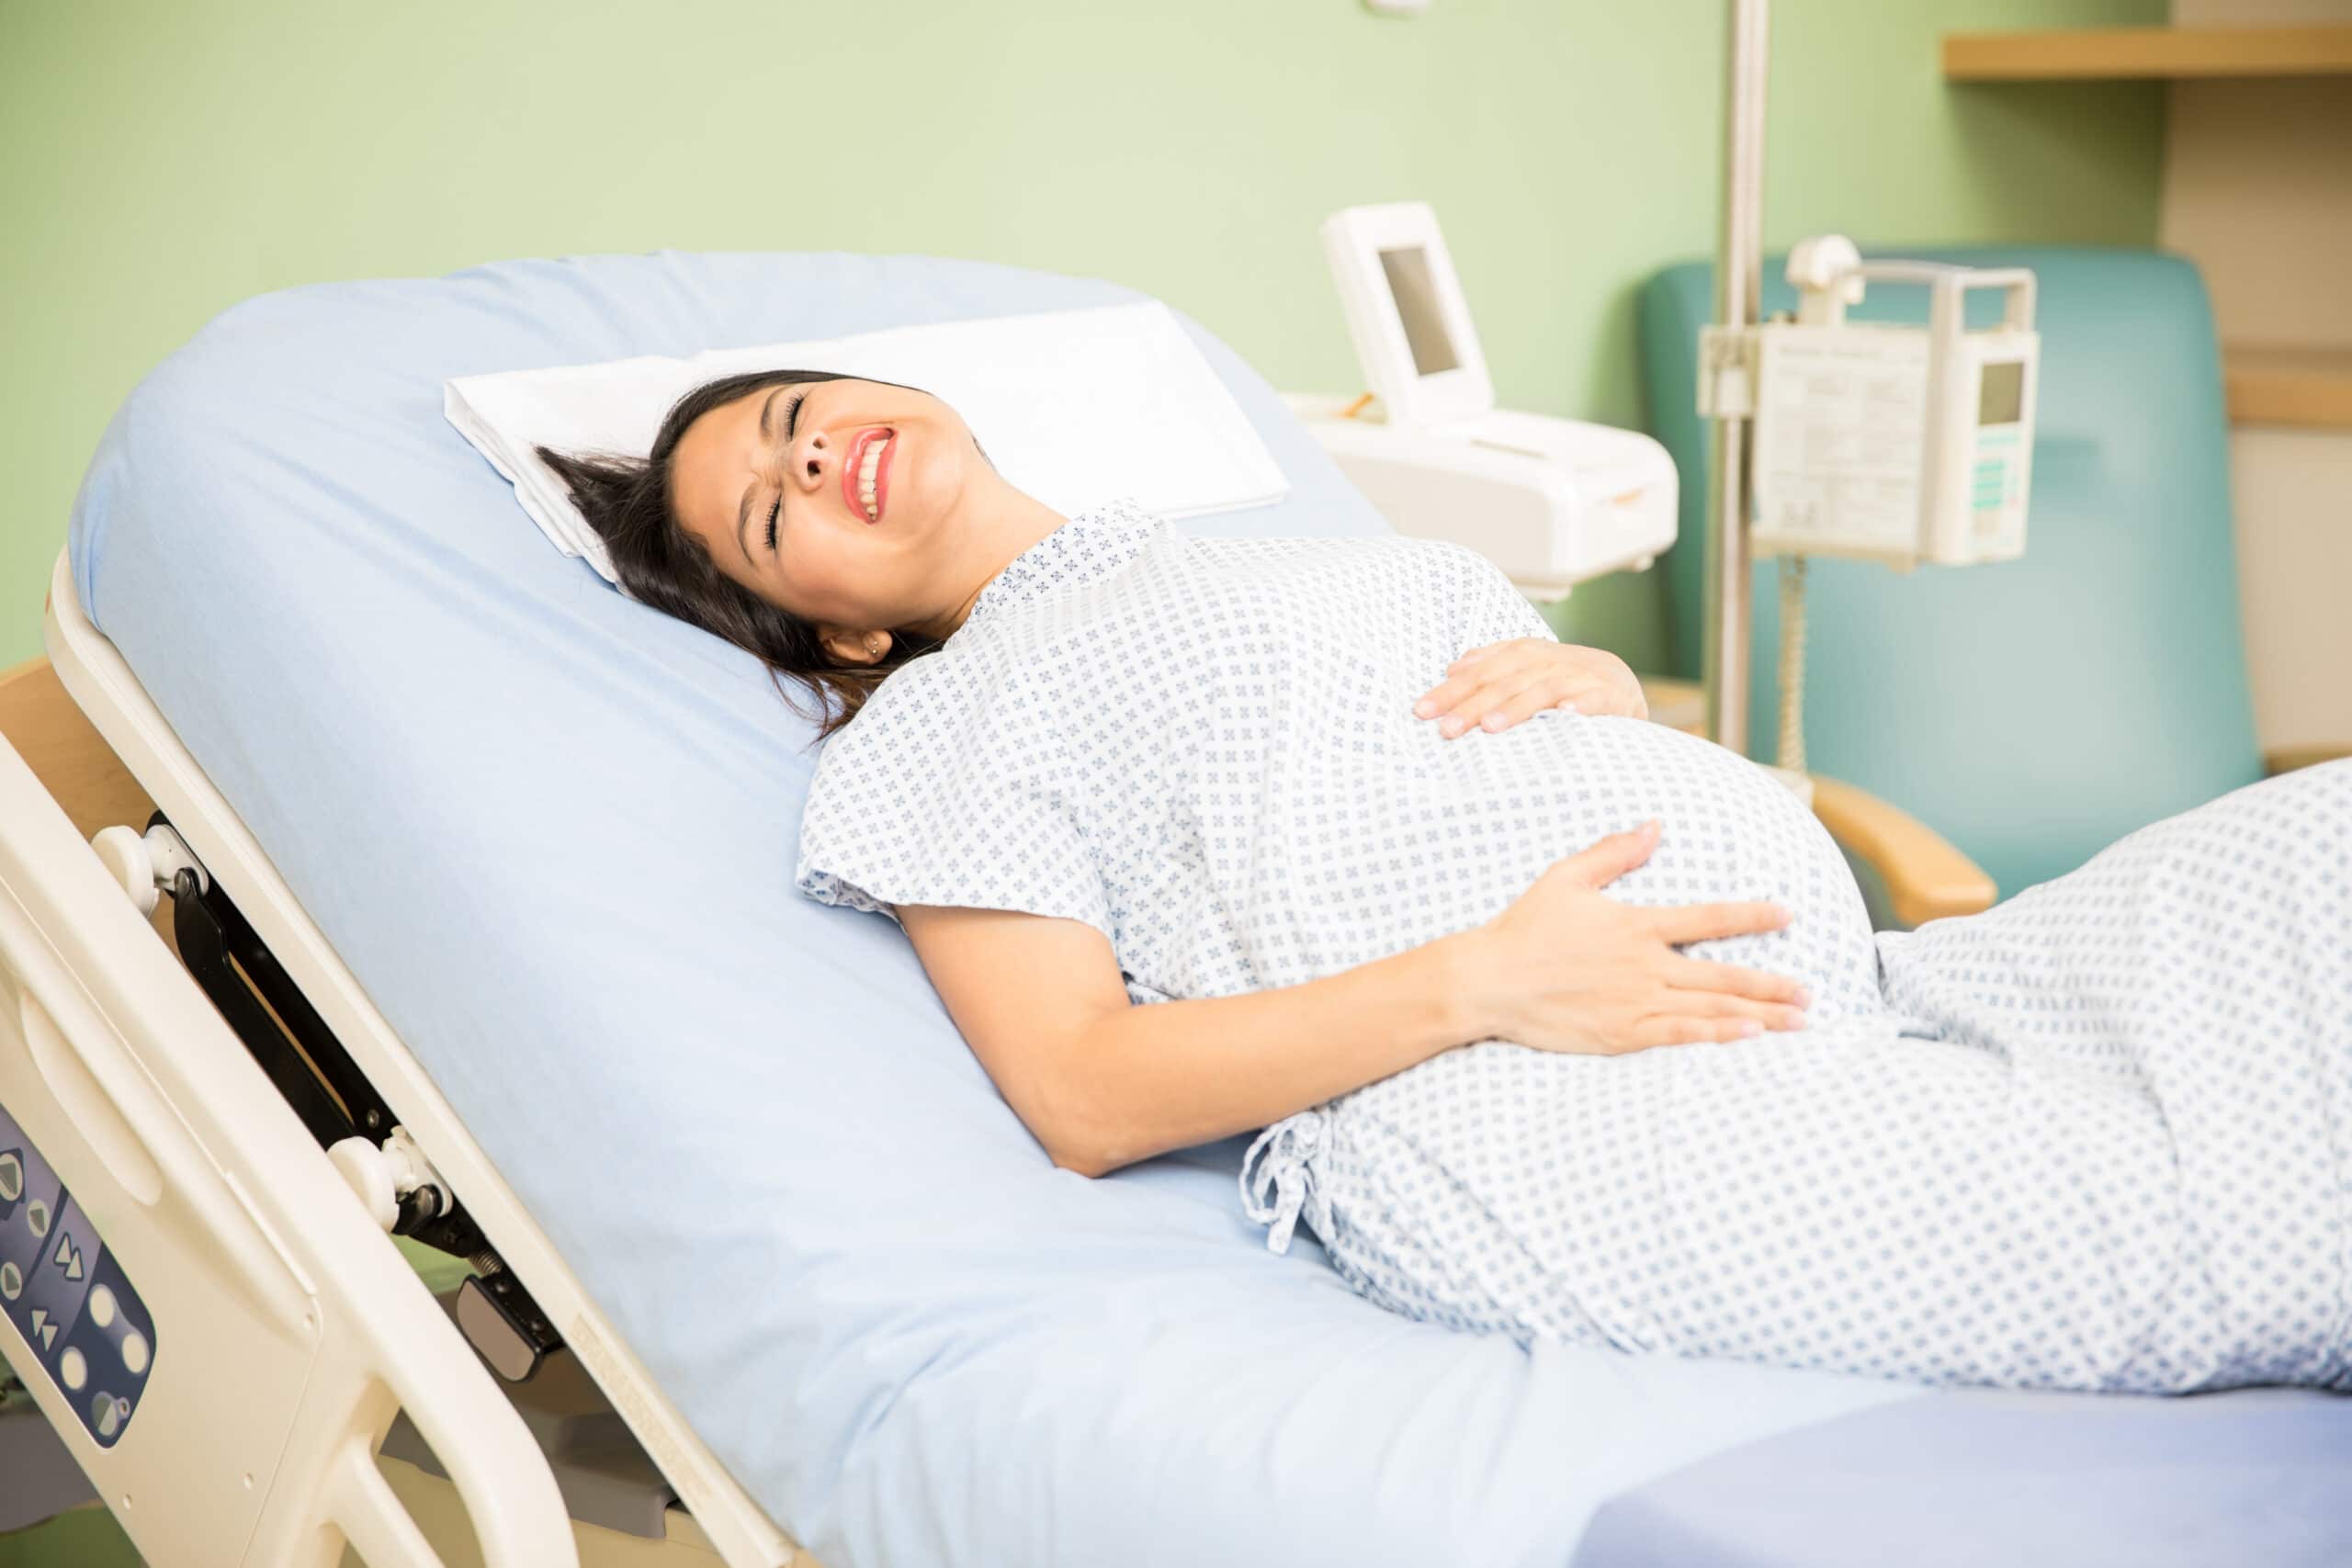 Back Labor Pain in Pregnancy